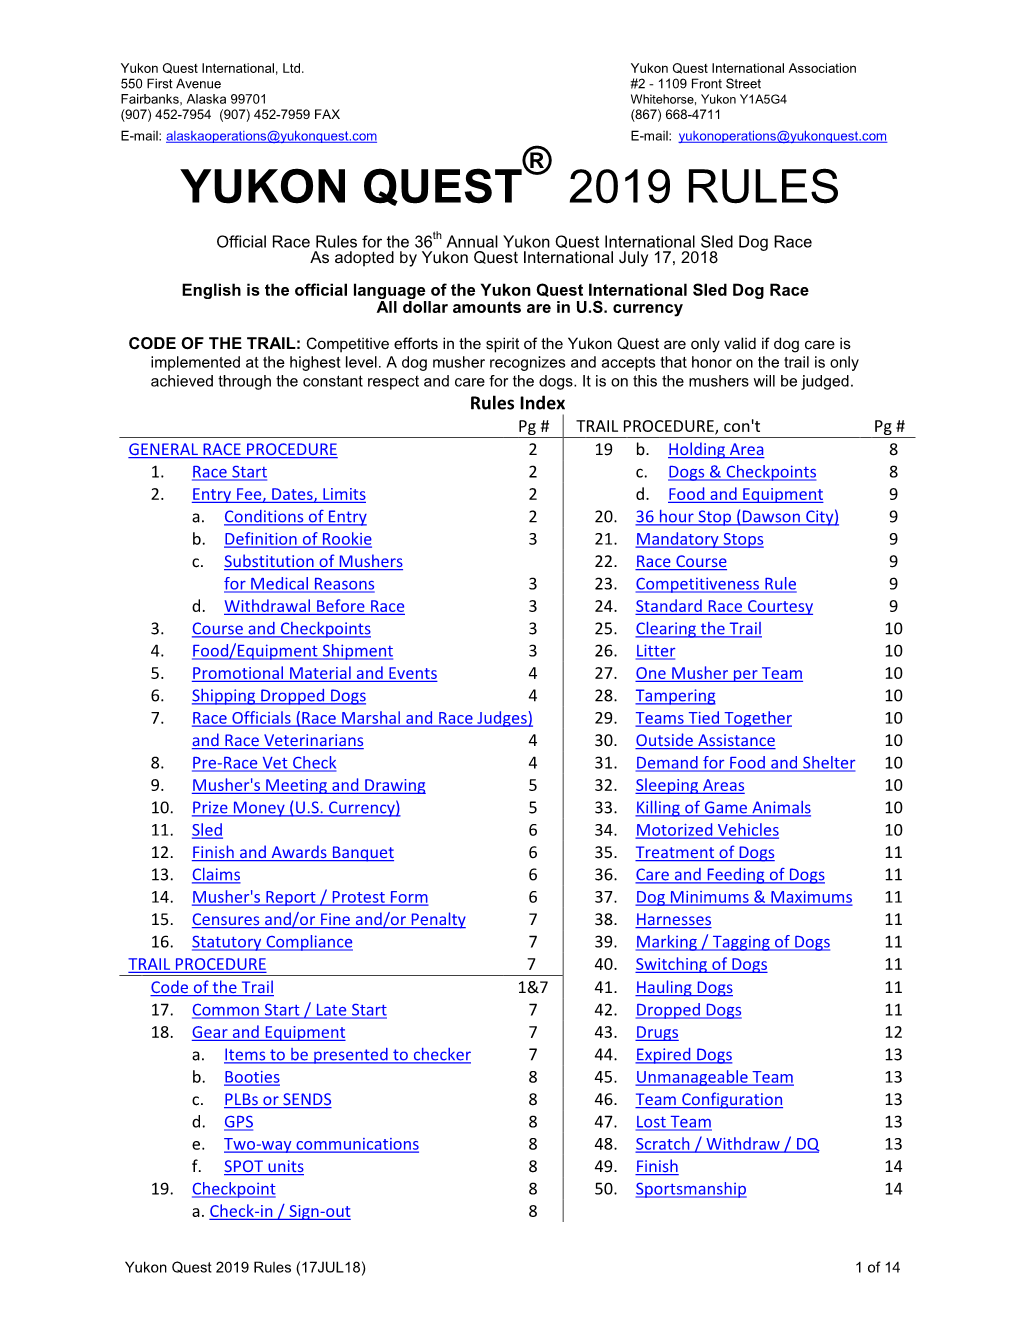 Yukon Quest 2019 Rules